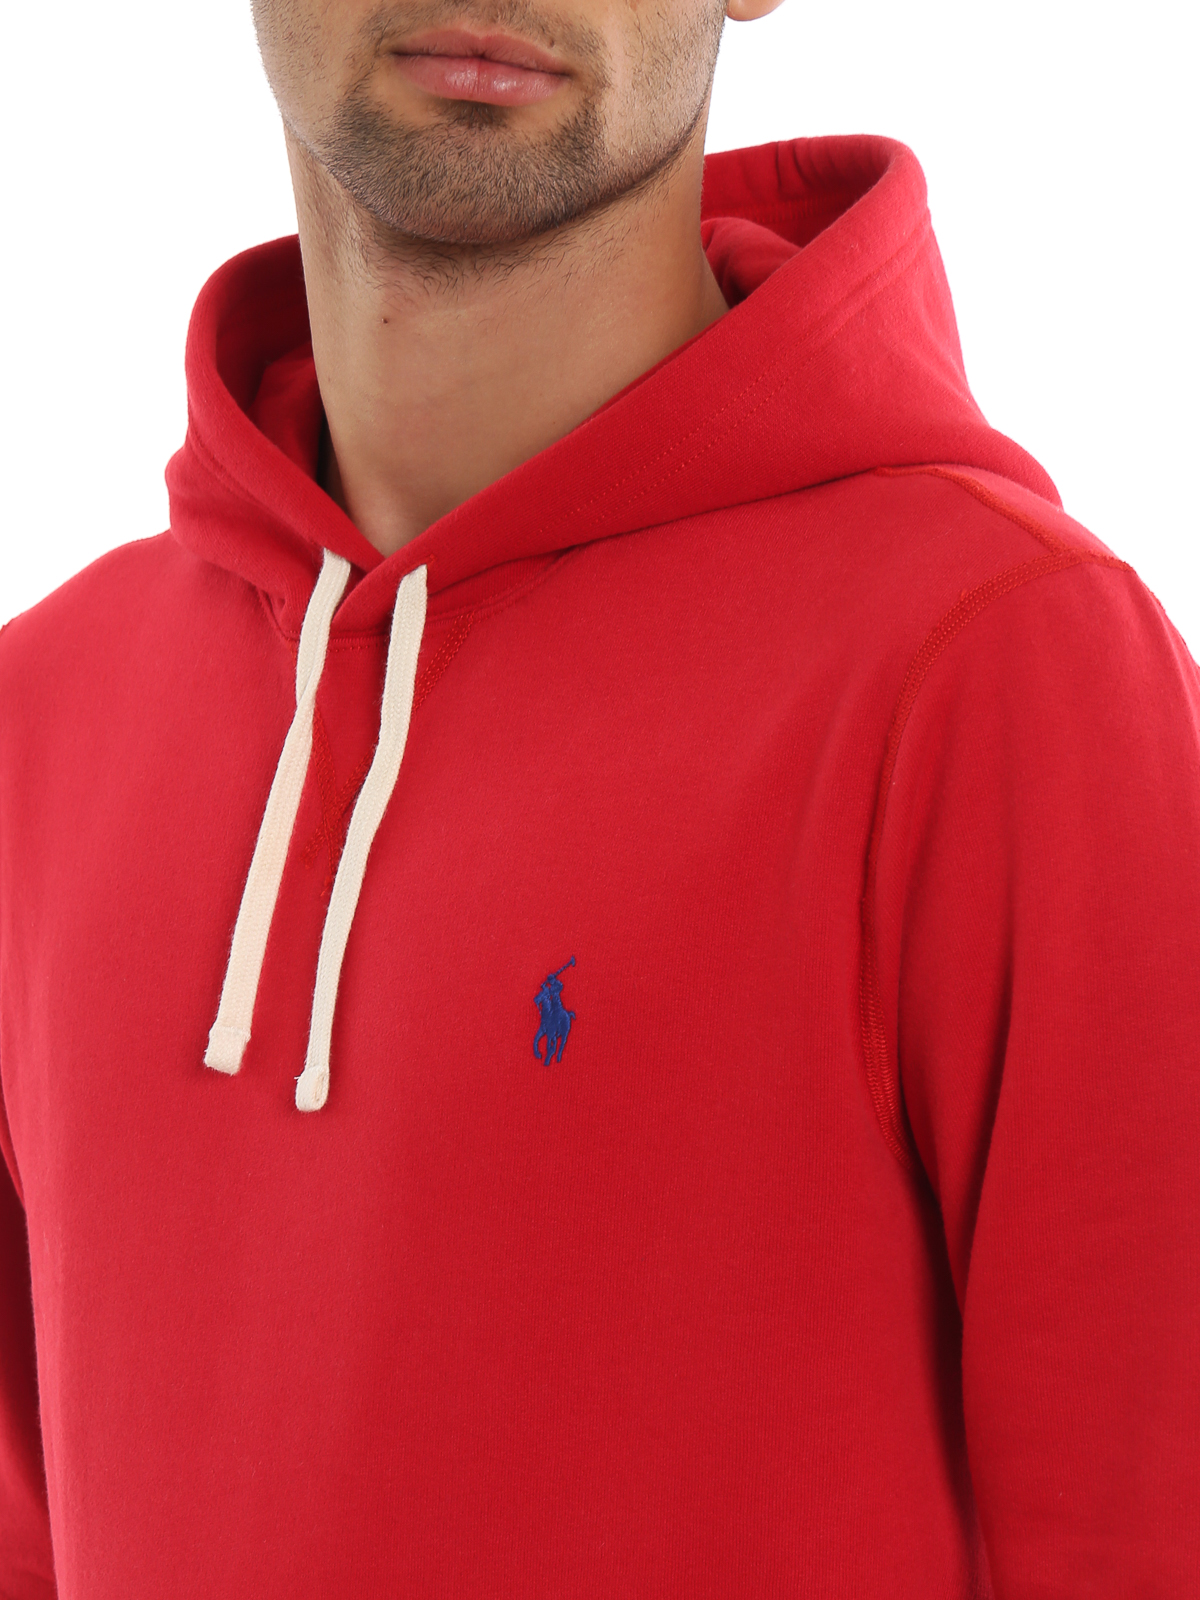 Sweatshirts & Sweaters Polo Ralph Lauren - Red fleece hoodie - 710766778002